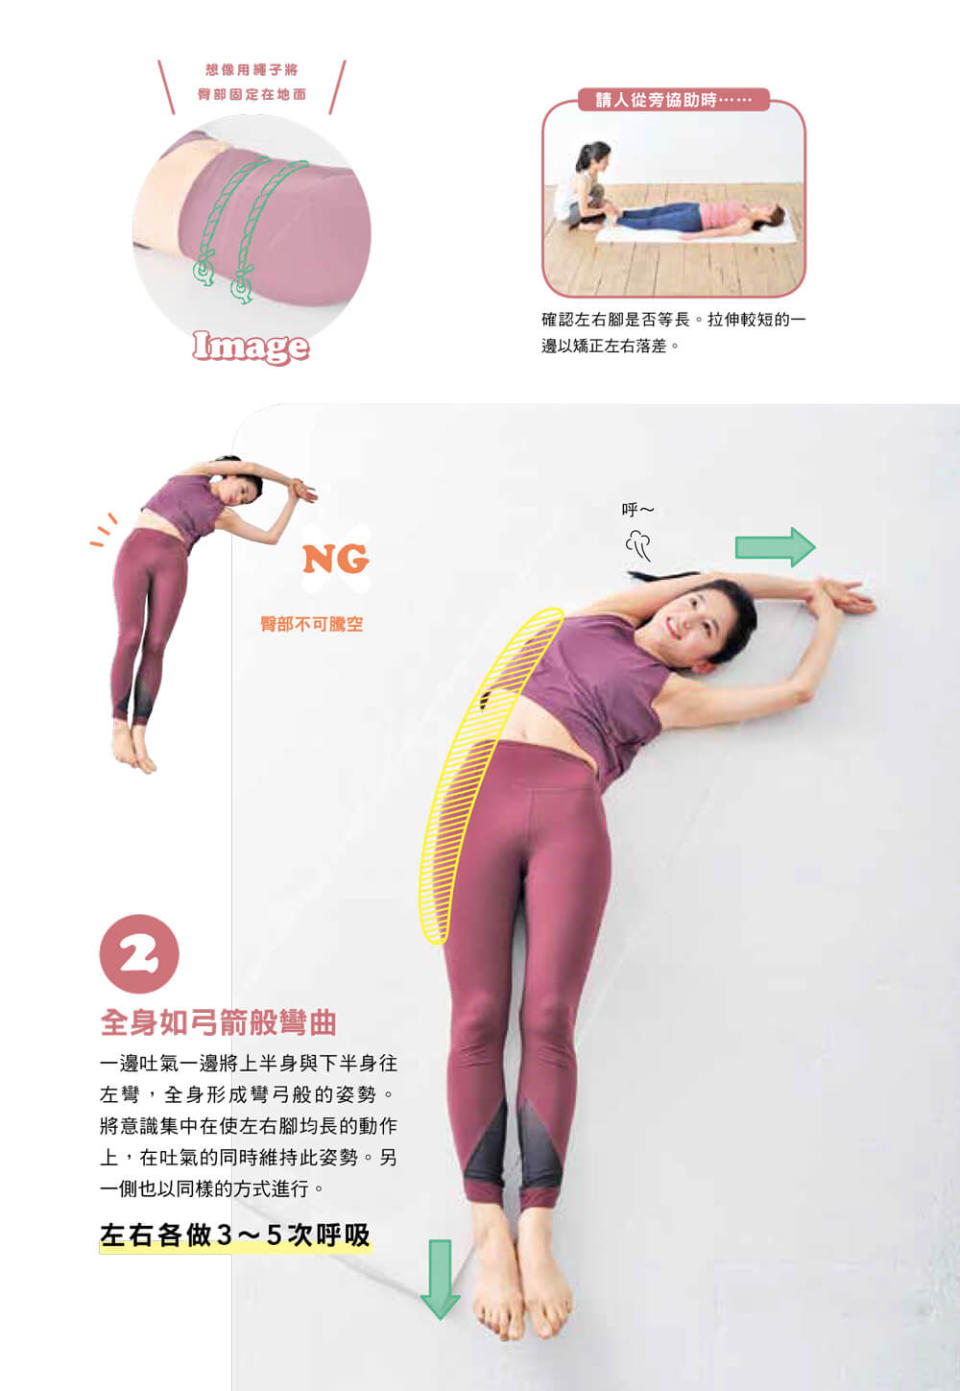 圖片來源：經《一分鐘隨時做！讓小腹平坦的臀肌伸展操》，台灣東販出版授權使用，未經許可不得任意轉載。